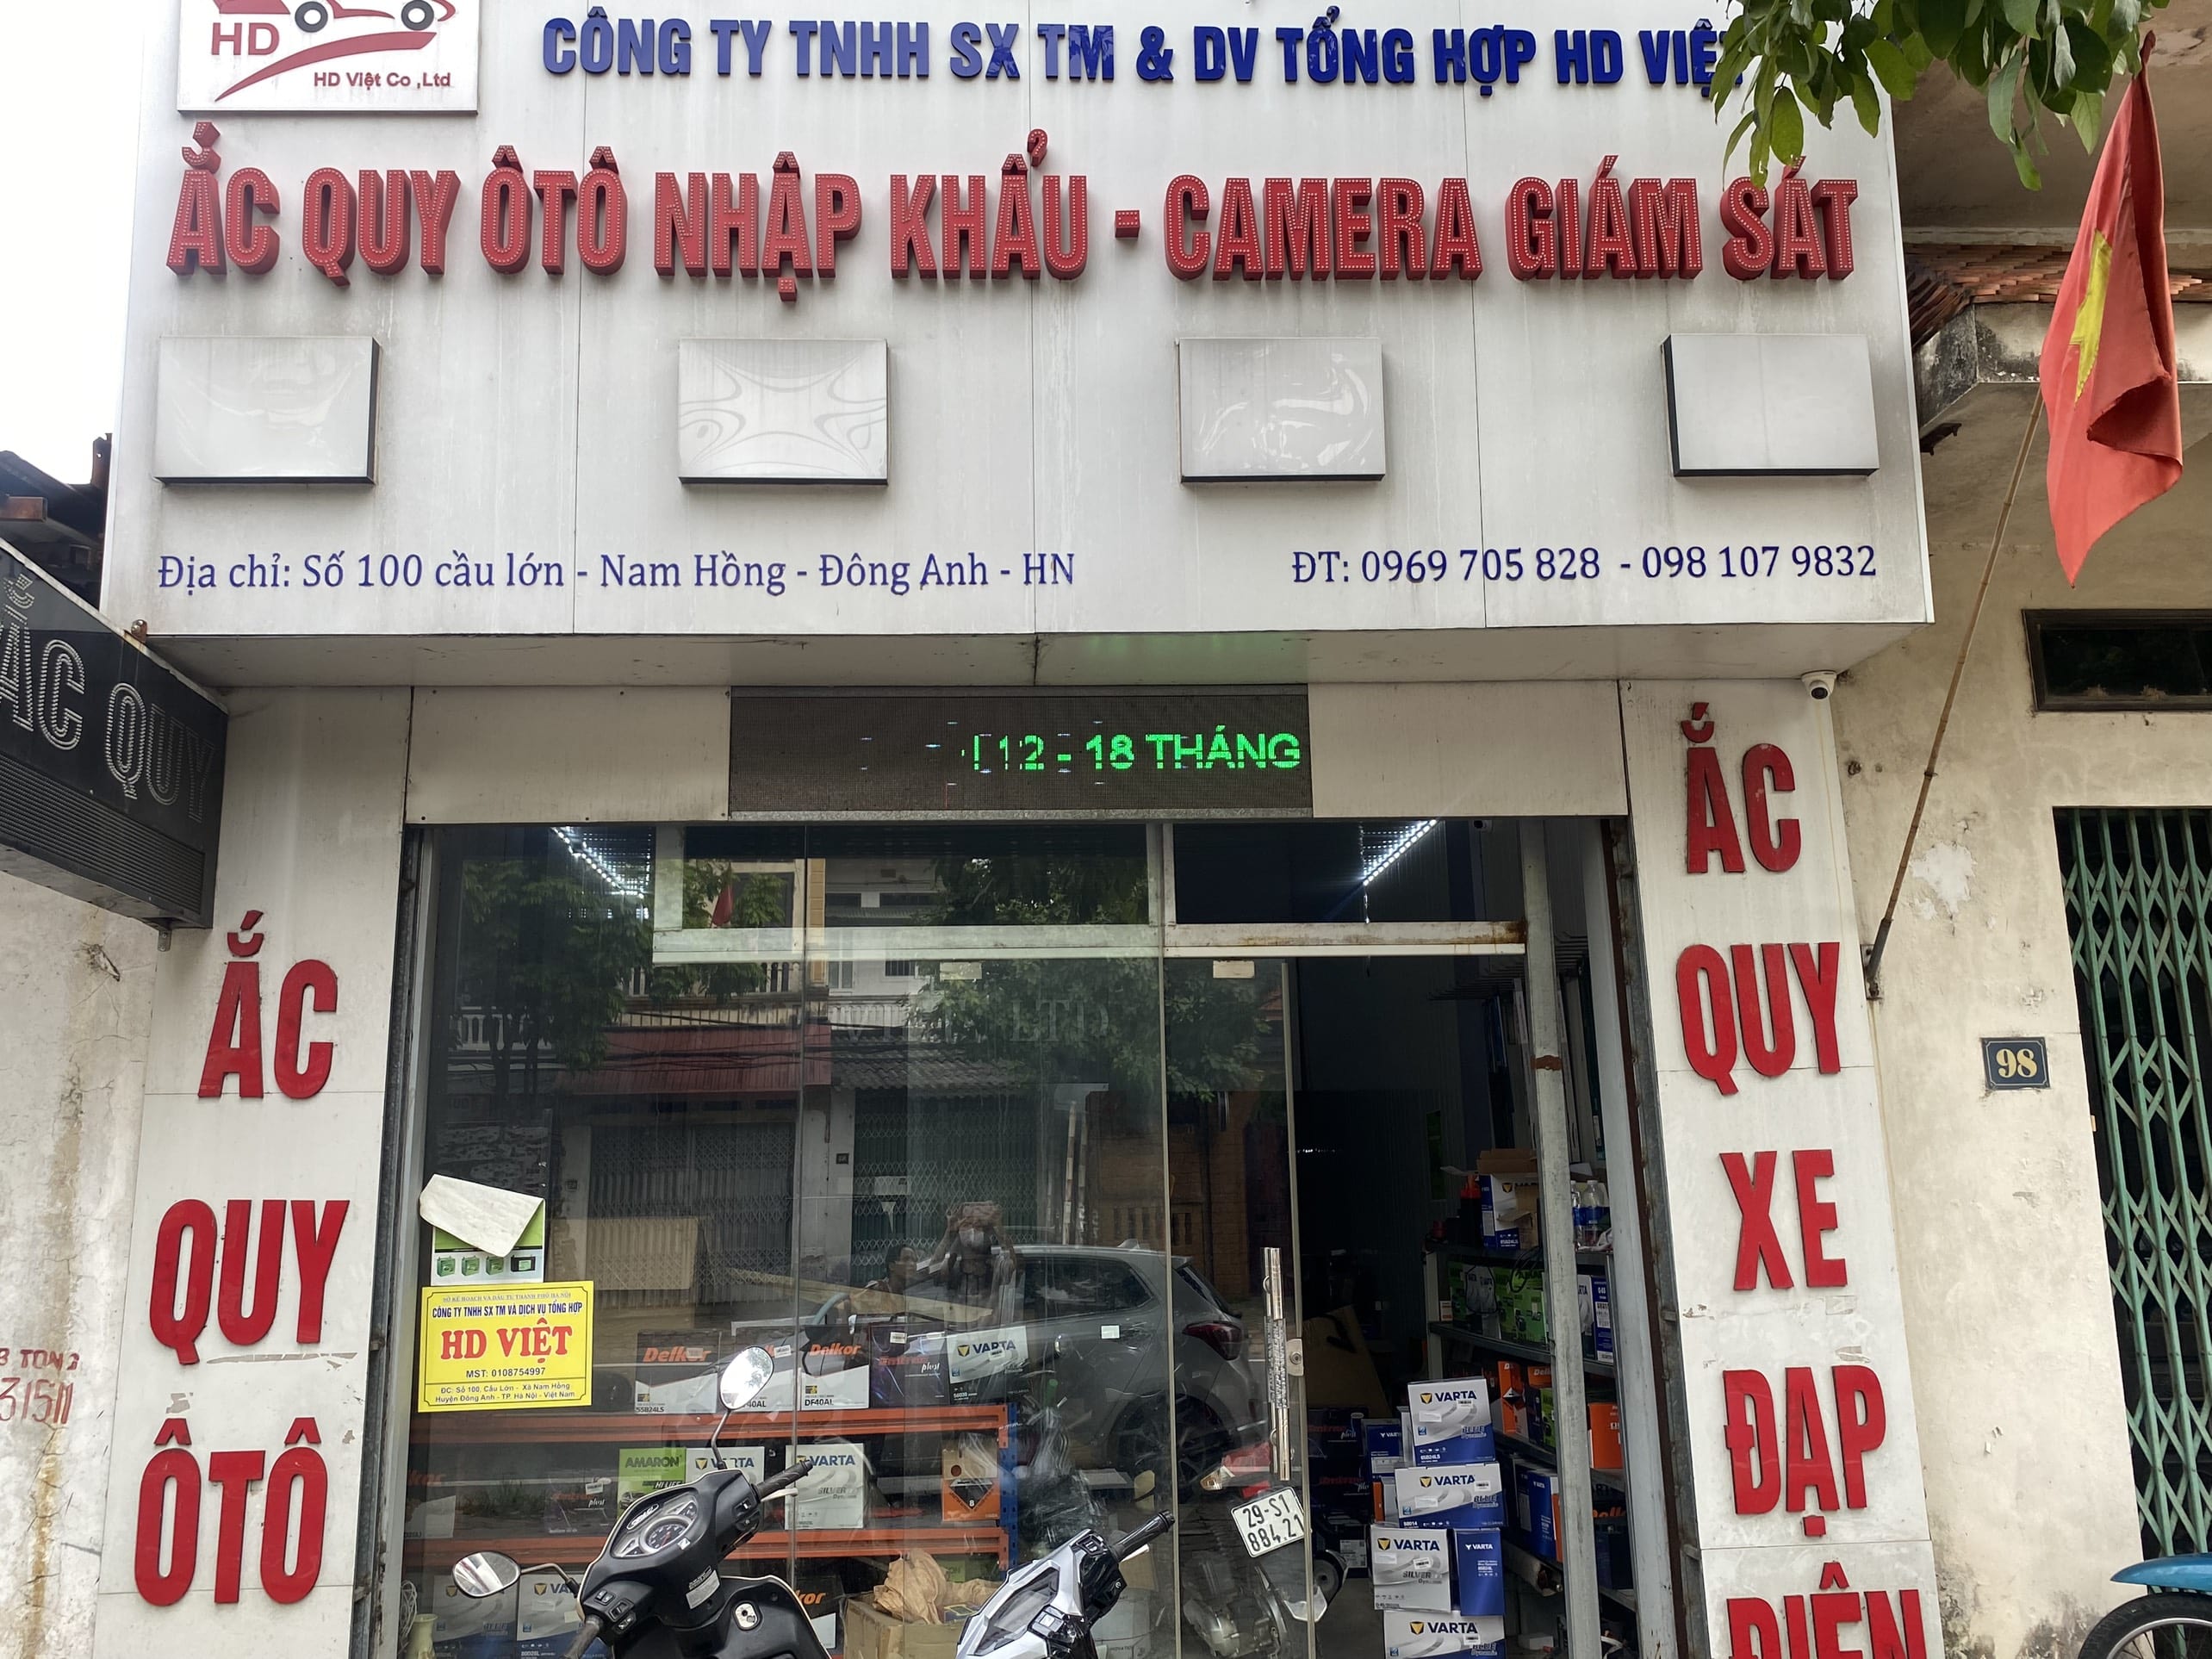 Hình Ảnh cửa hàng ắc quy HD Việt tại 100 cầu lớn - Nam hồng - Đông anh